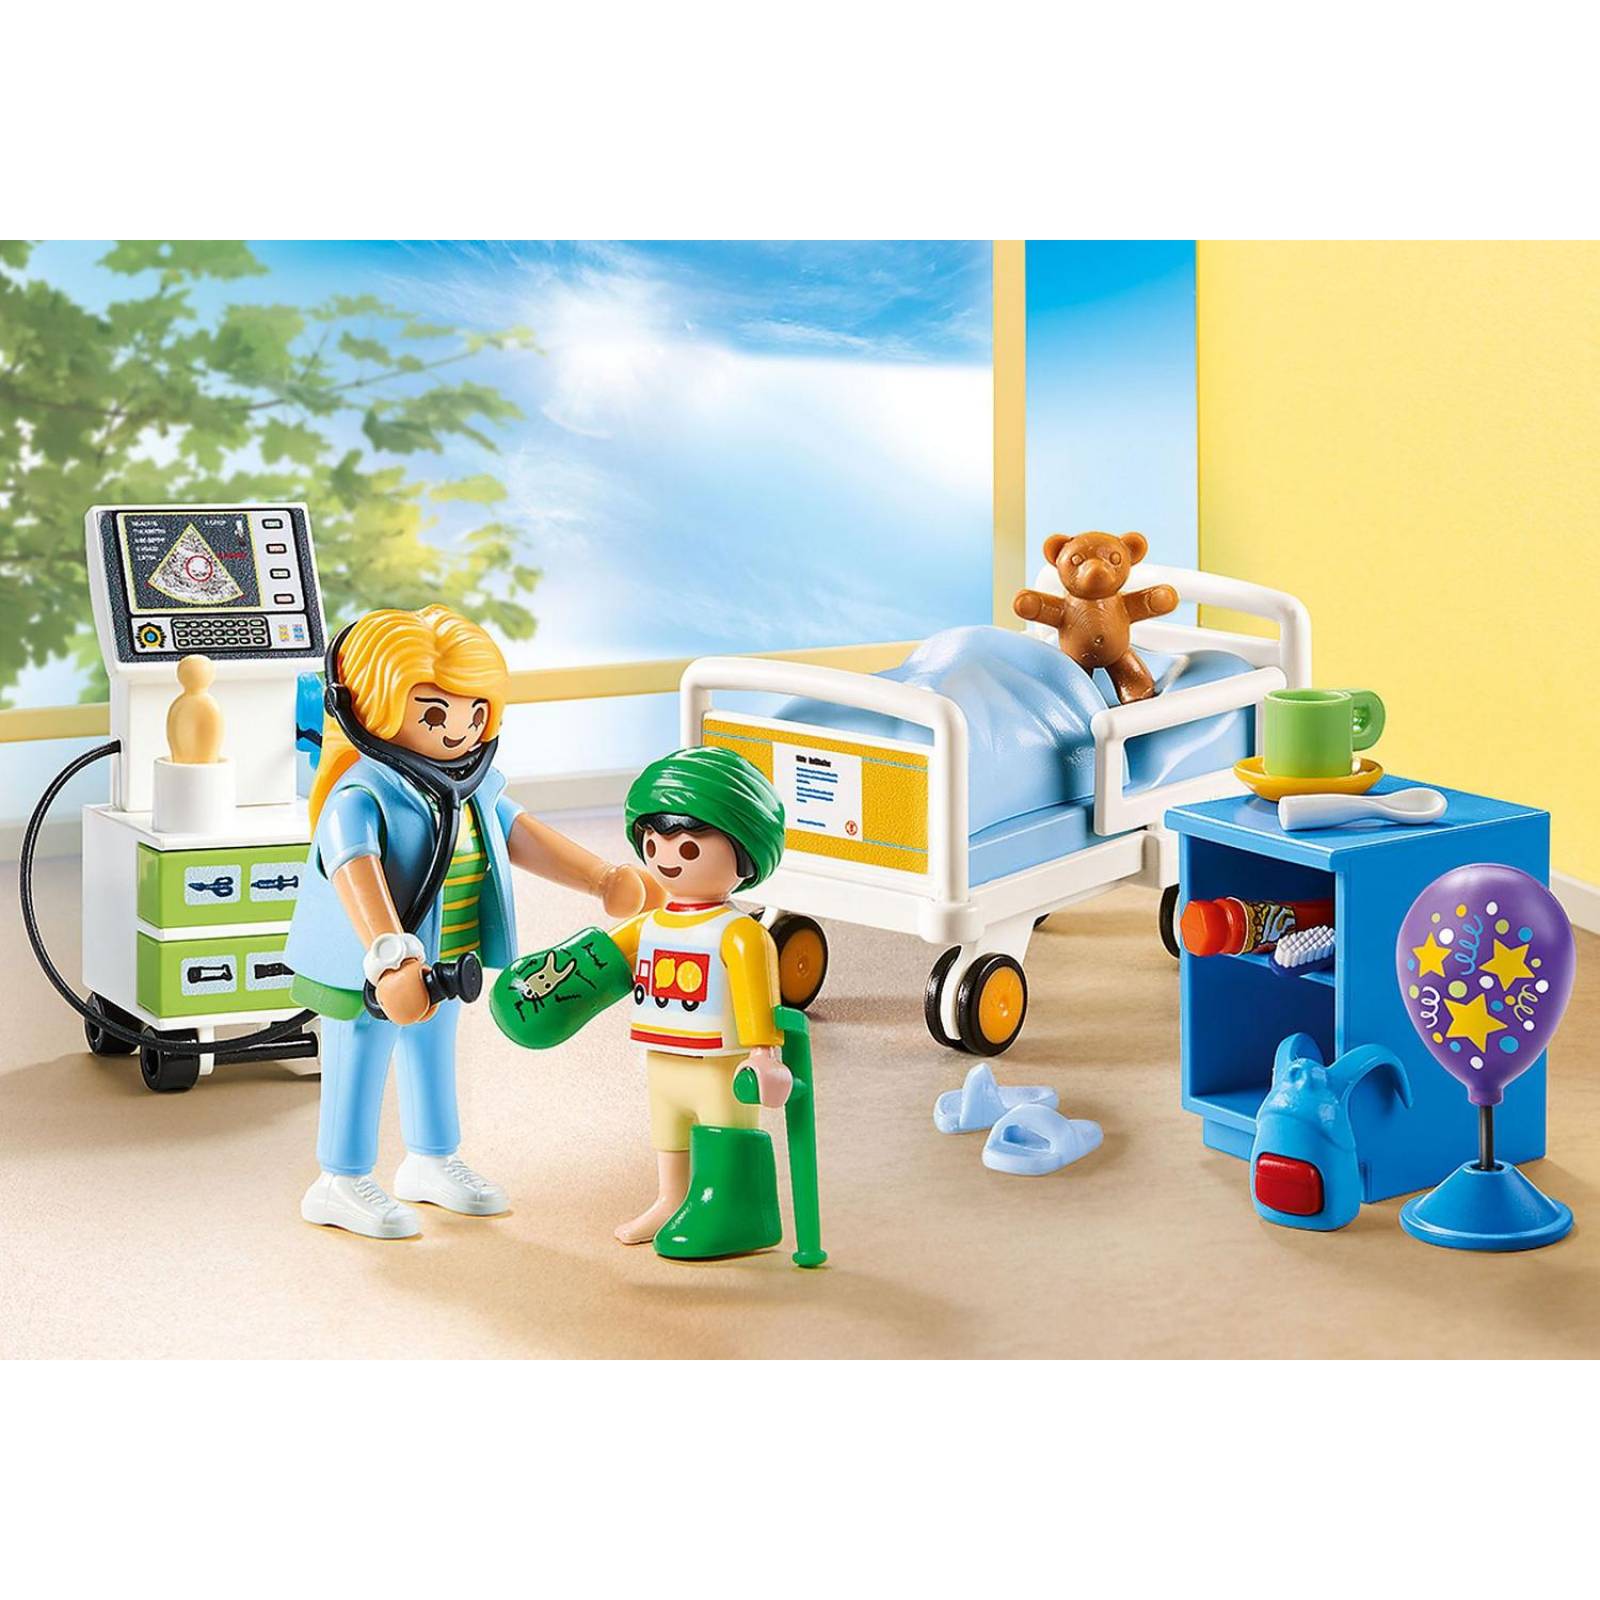 Playmobil City Life Clinica Pediatrica Niños Original Intek